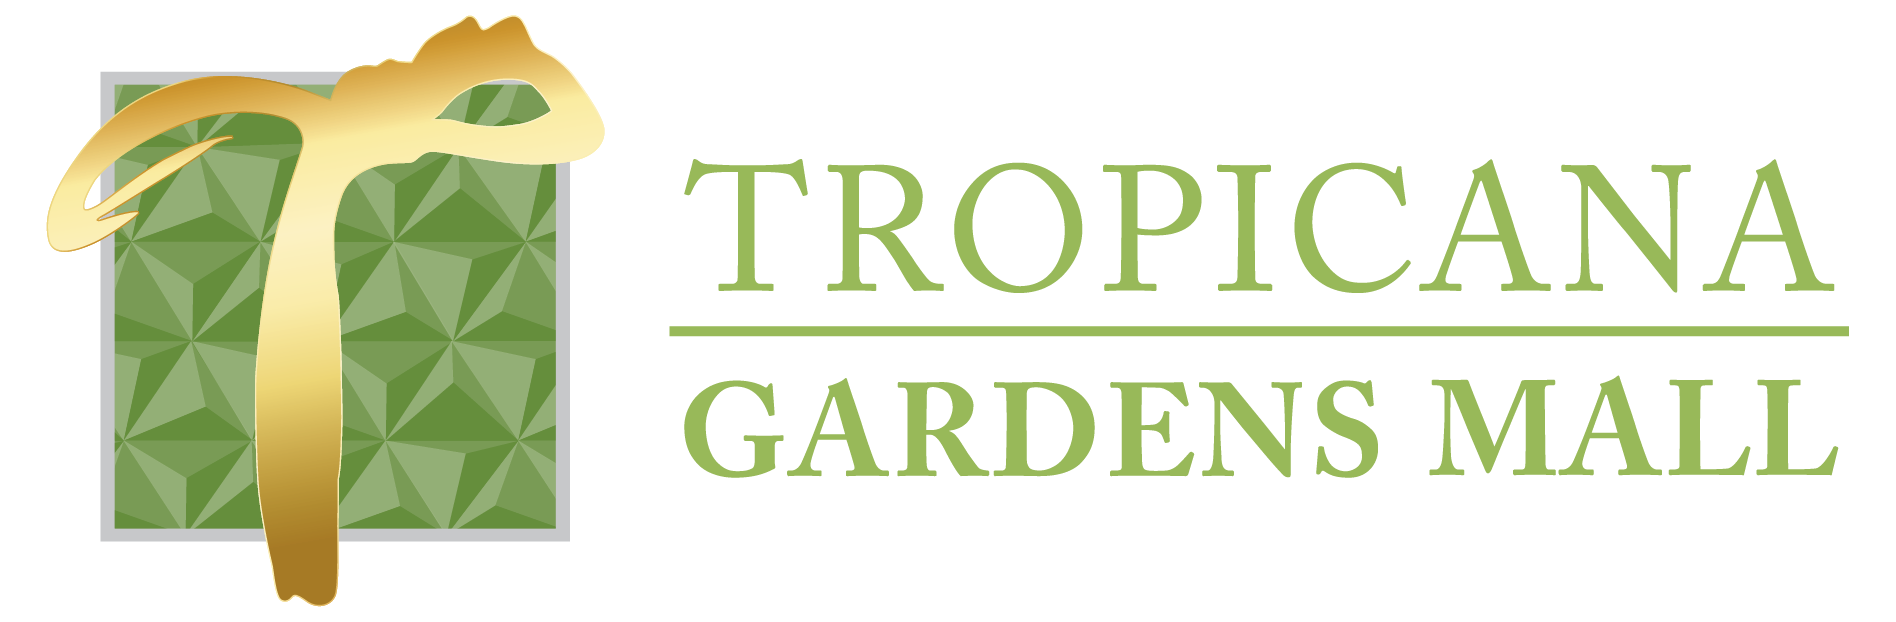 Tropicana gardens mall shops